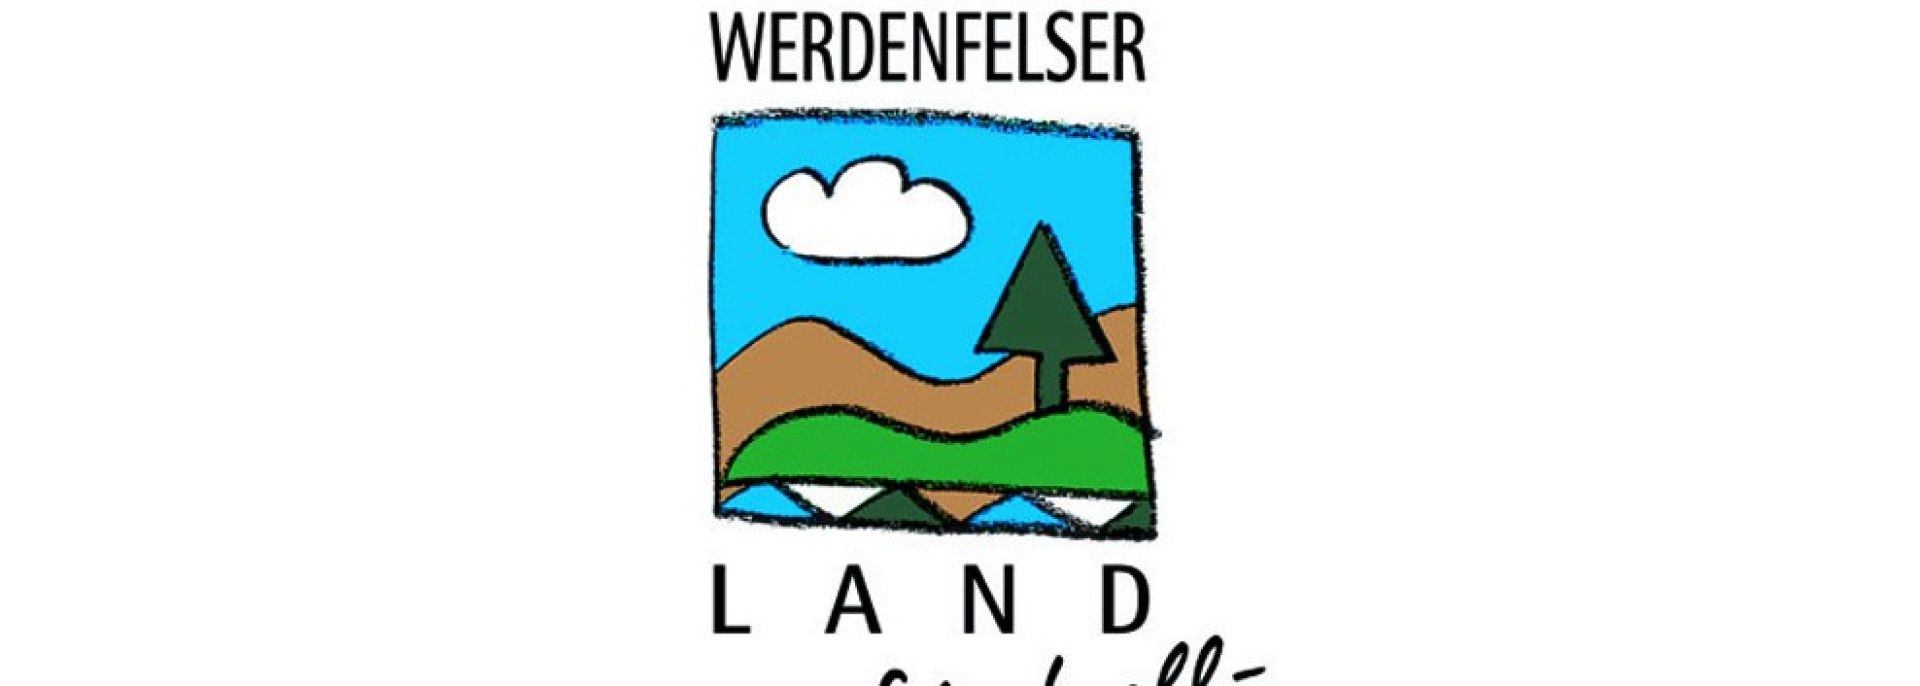 Werdenfelser Land Schafwolle, © www.werdenfelser-schafwolle.de